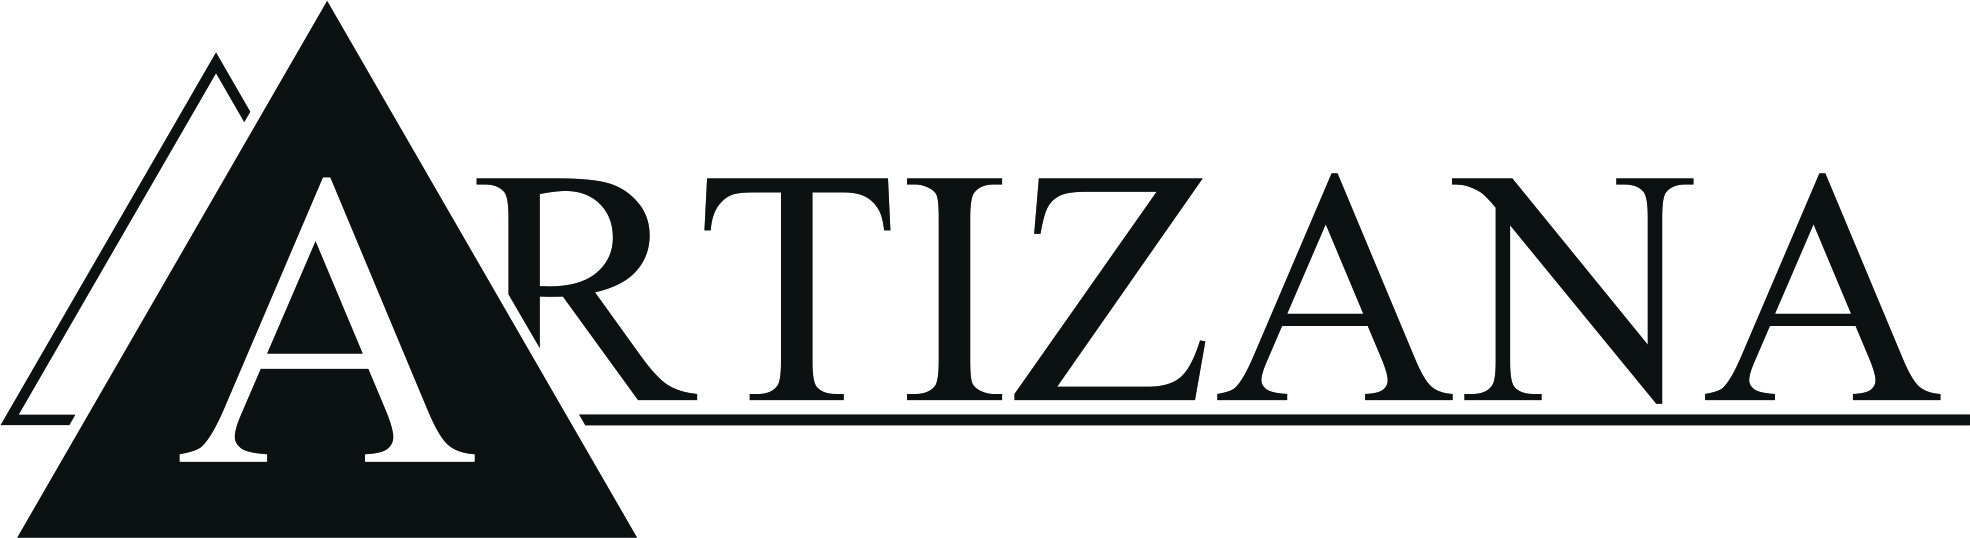 Logo Artizana